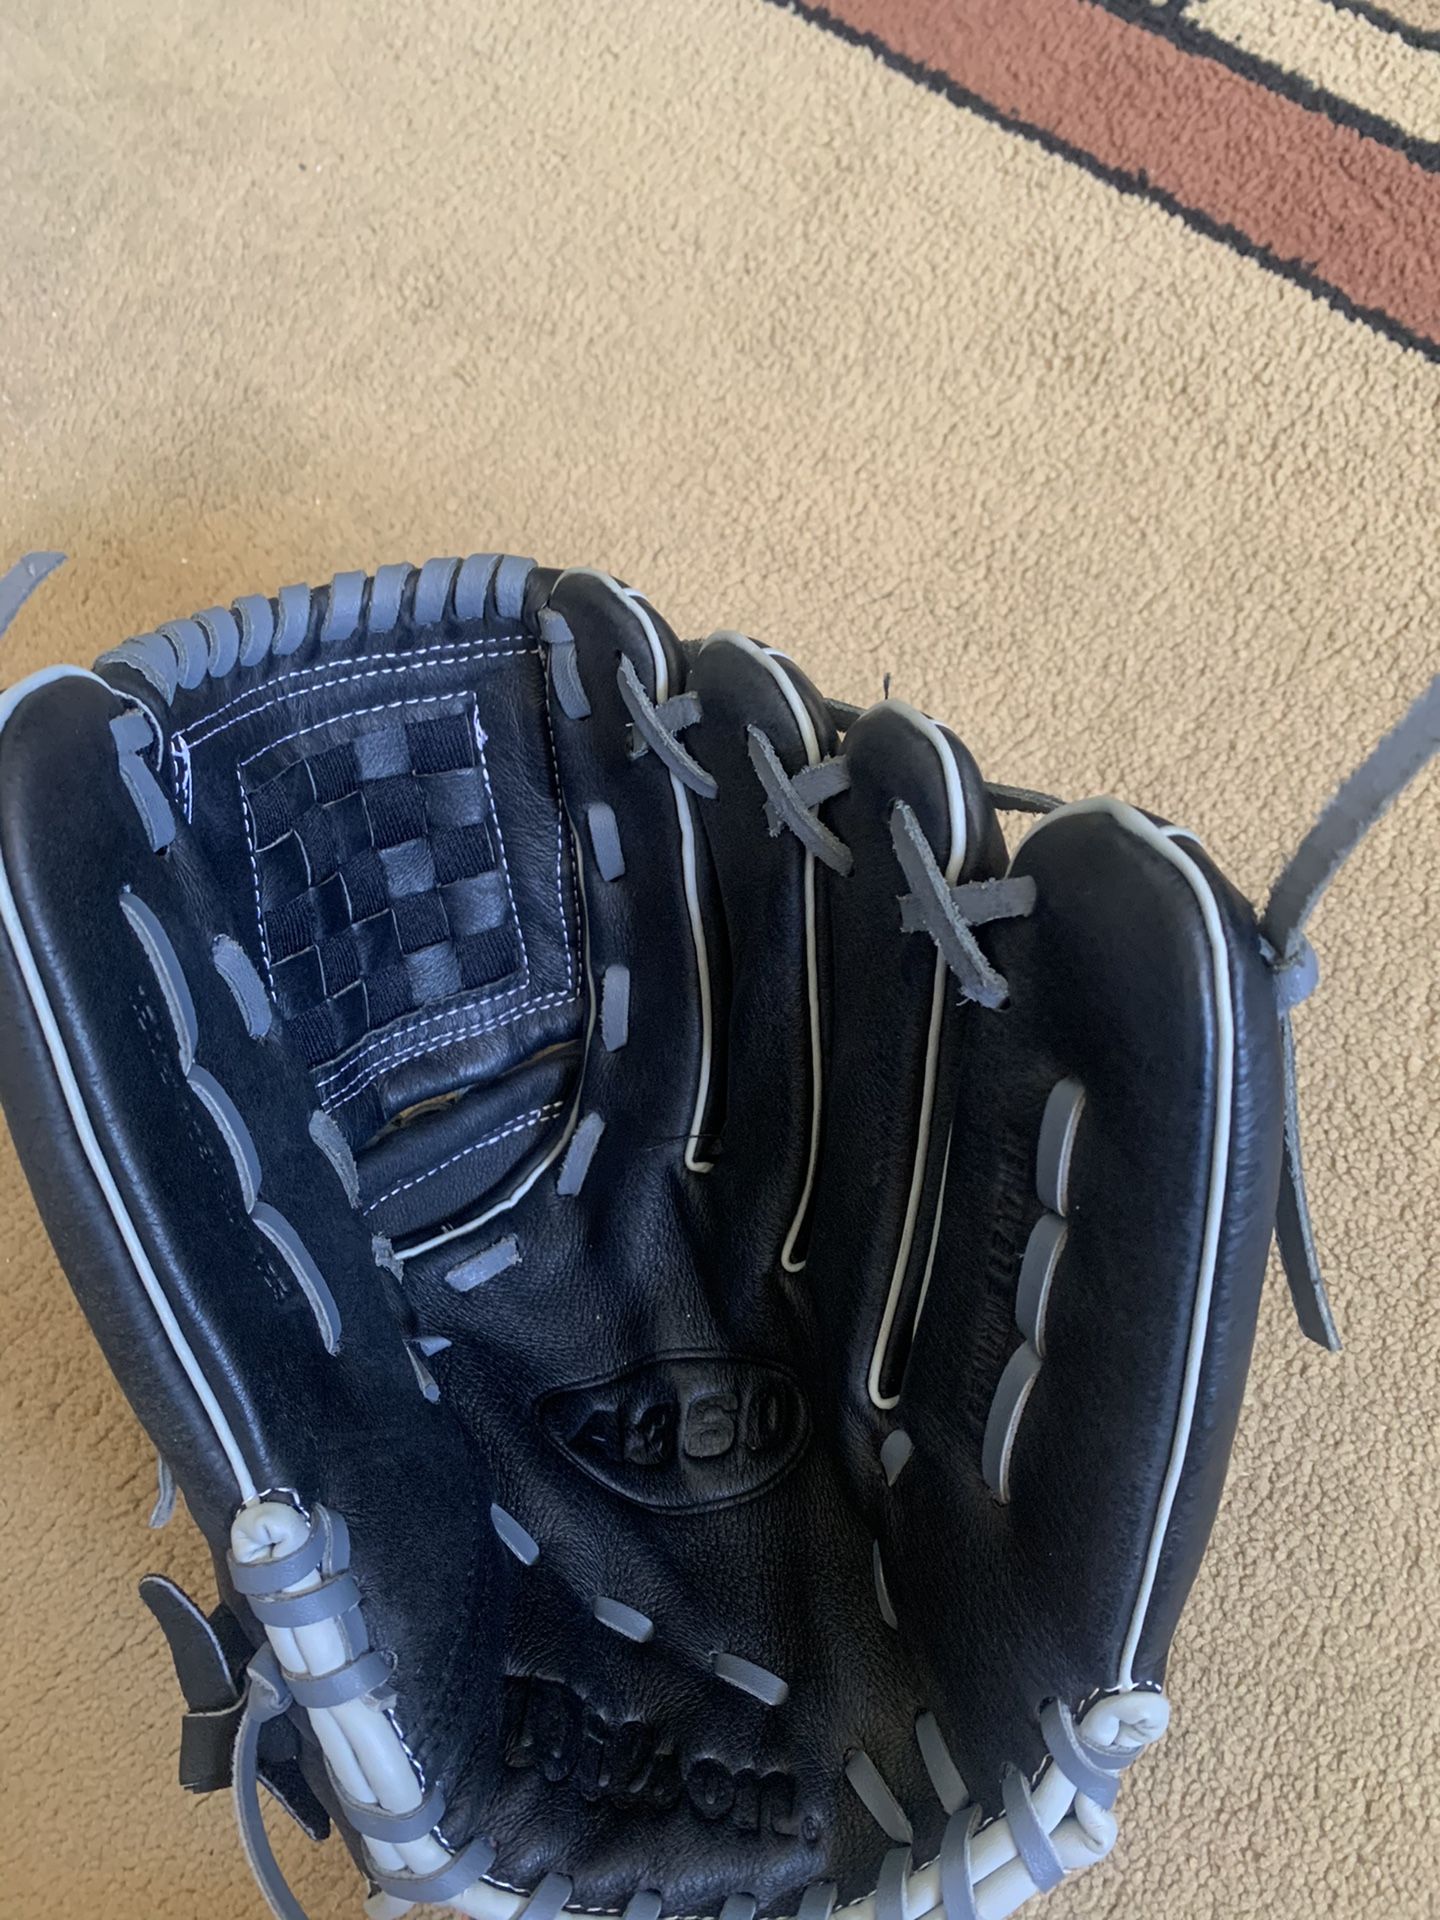 Wilson A360 12.5” Softball Glove - Brand New